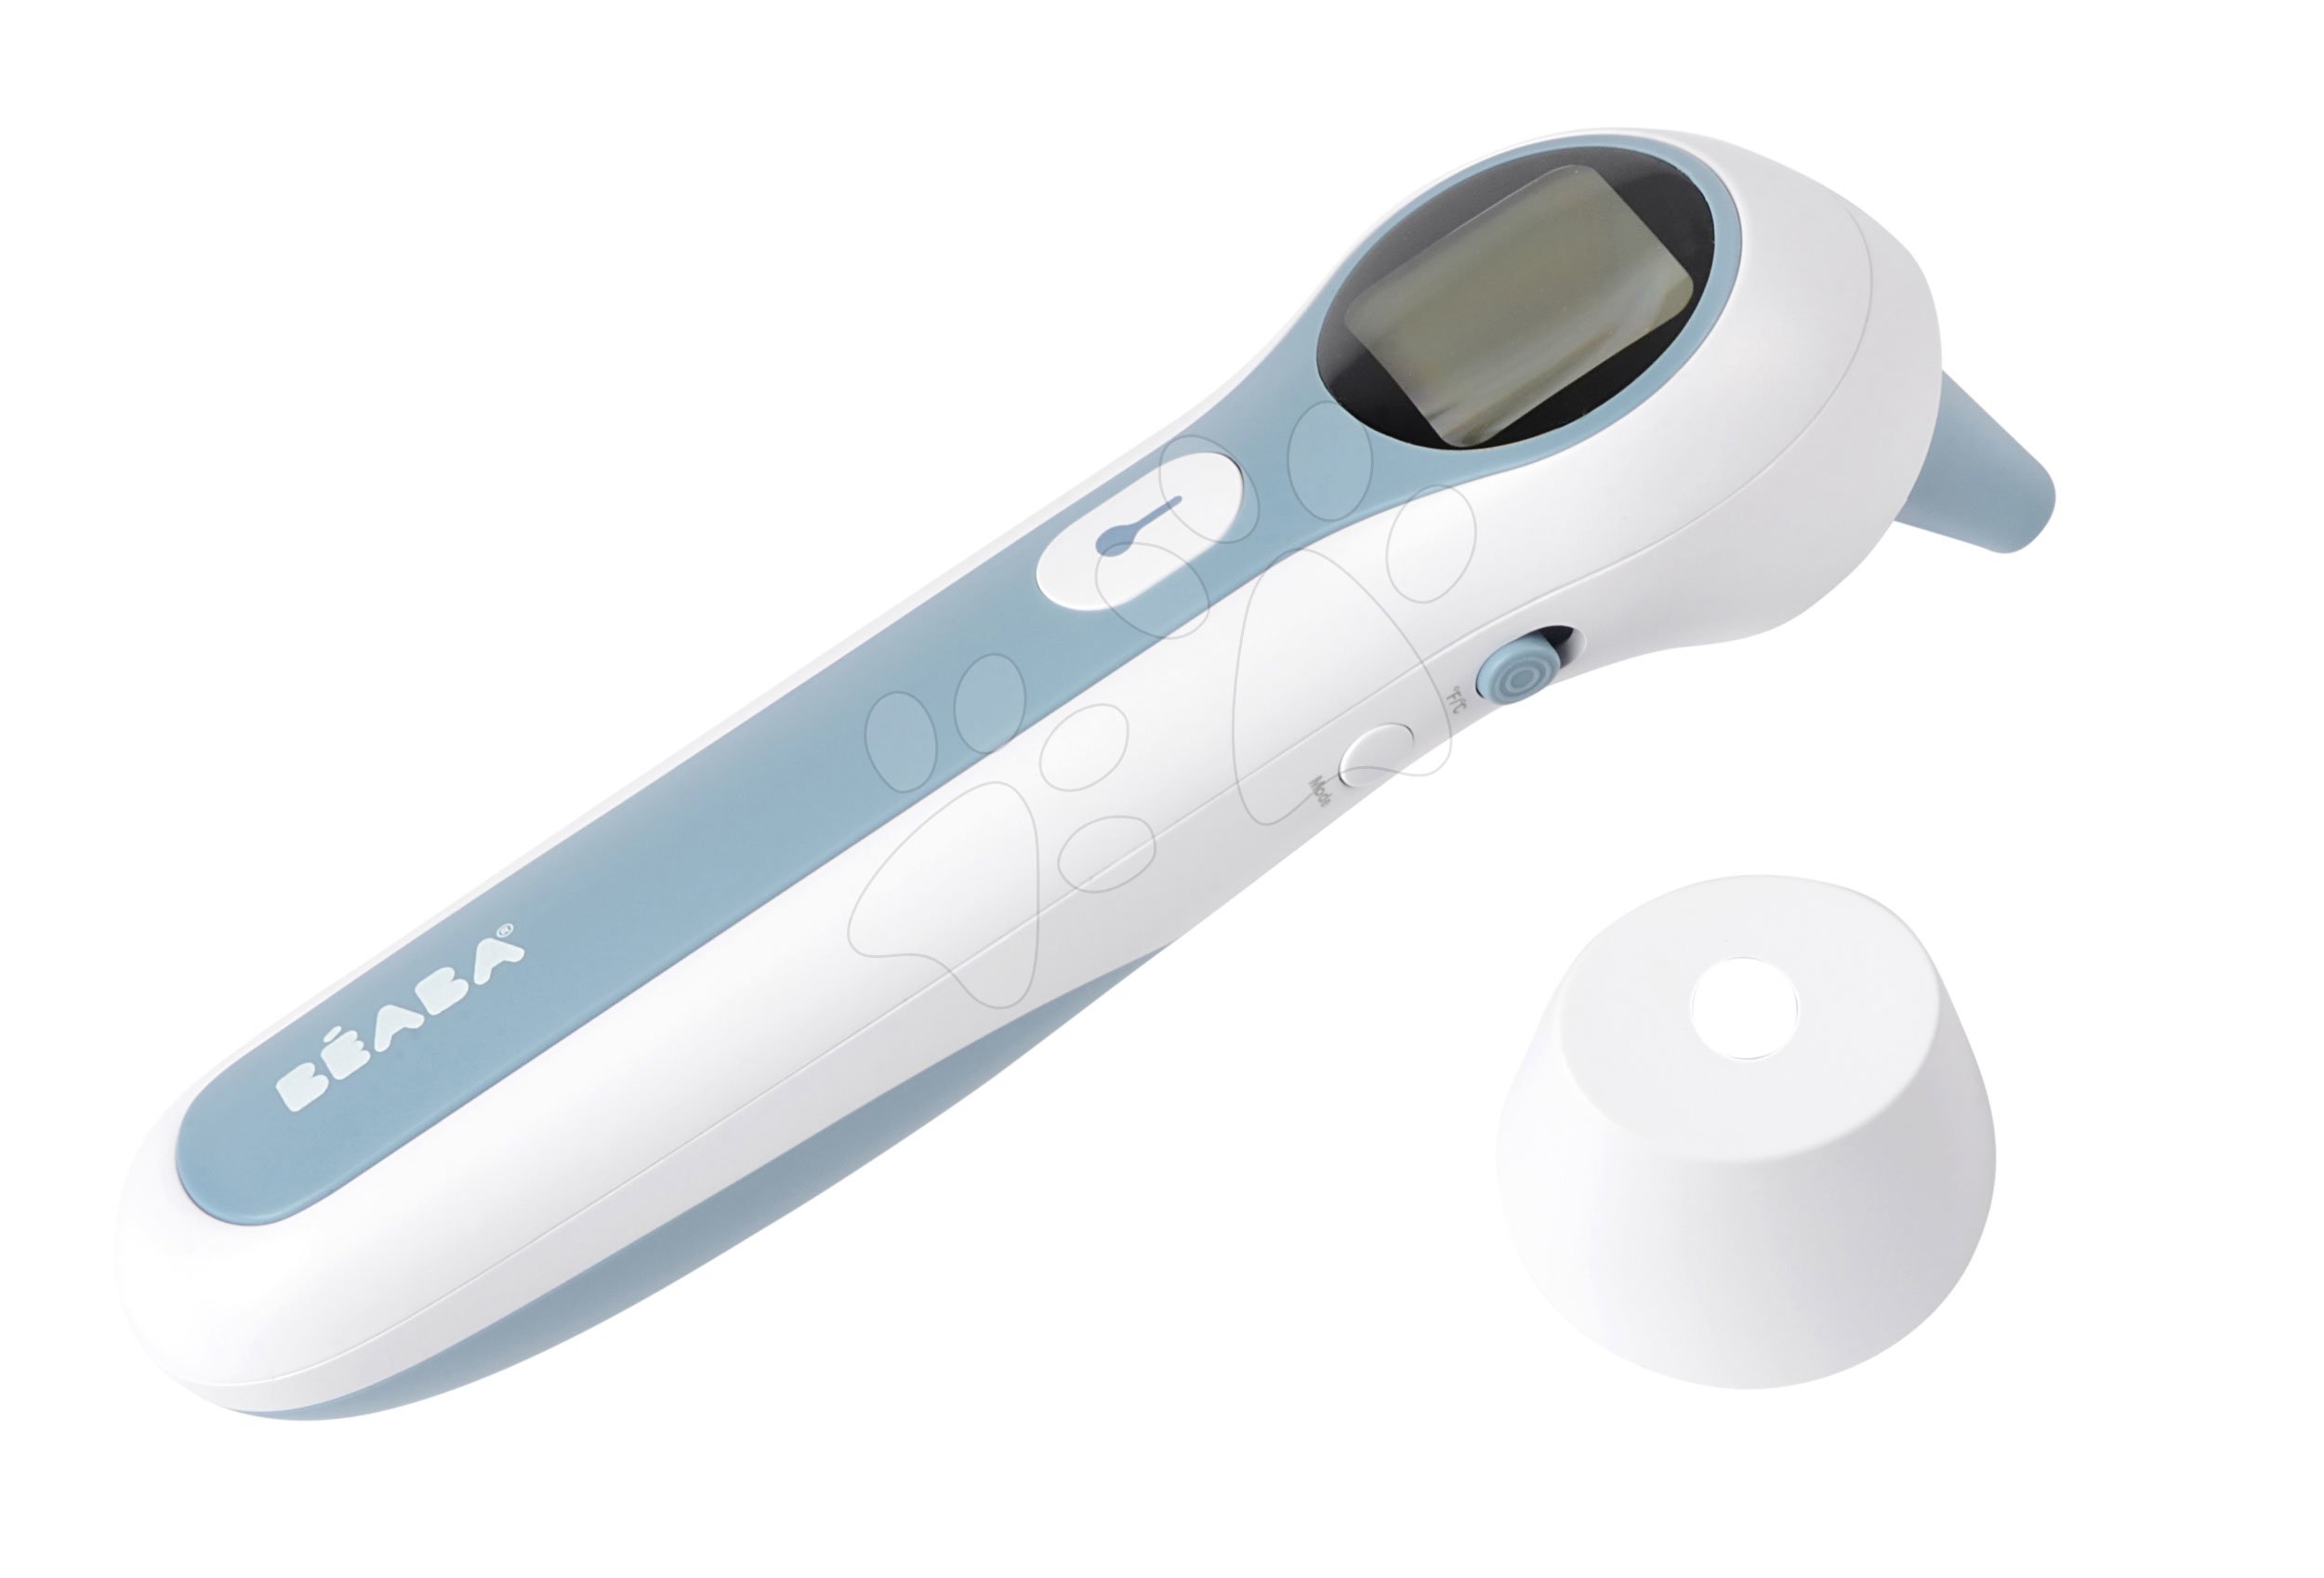 Teploměr bezdotykový Beaba Thermospeed Infrared Thermometer Forehead and Ear Detection – měření z če